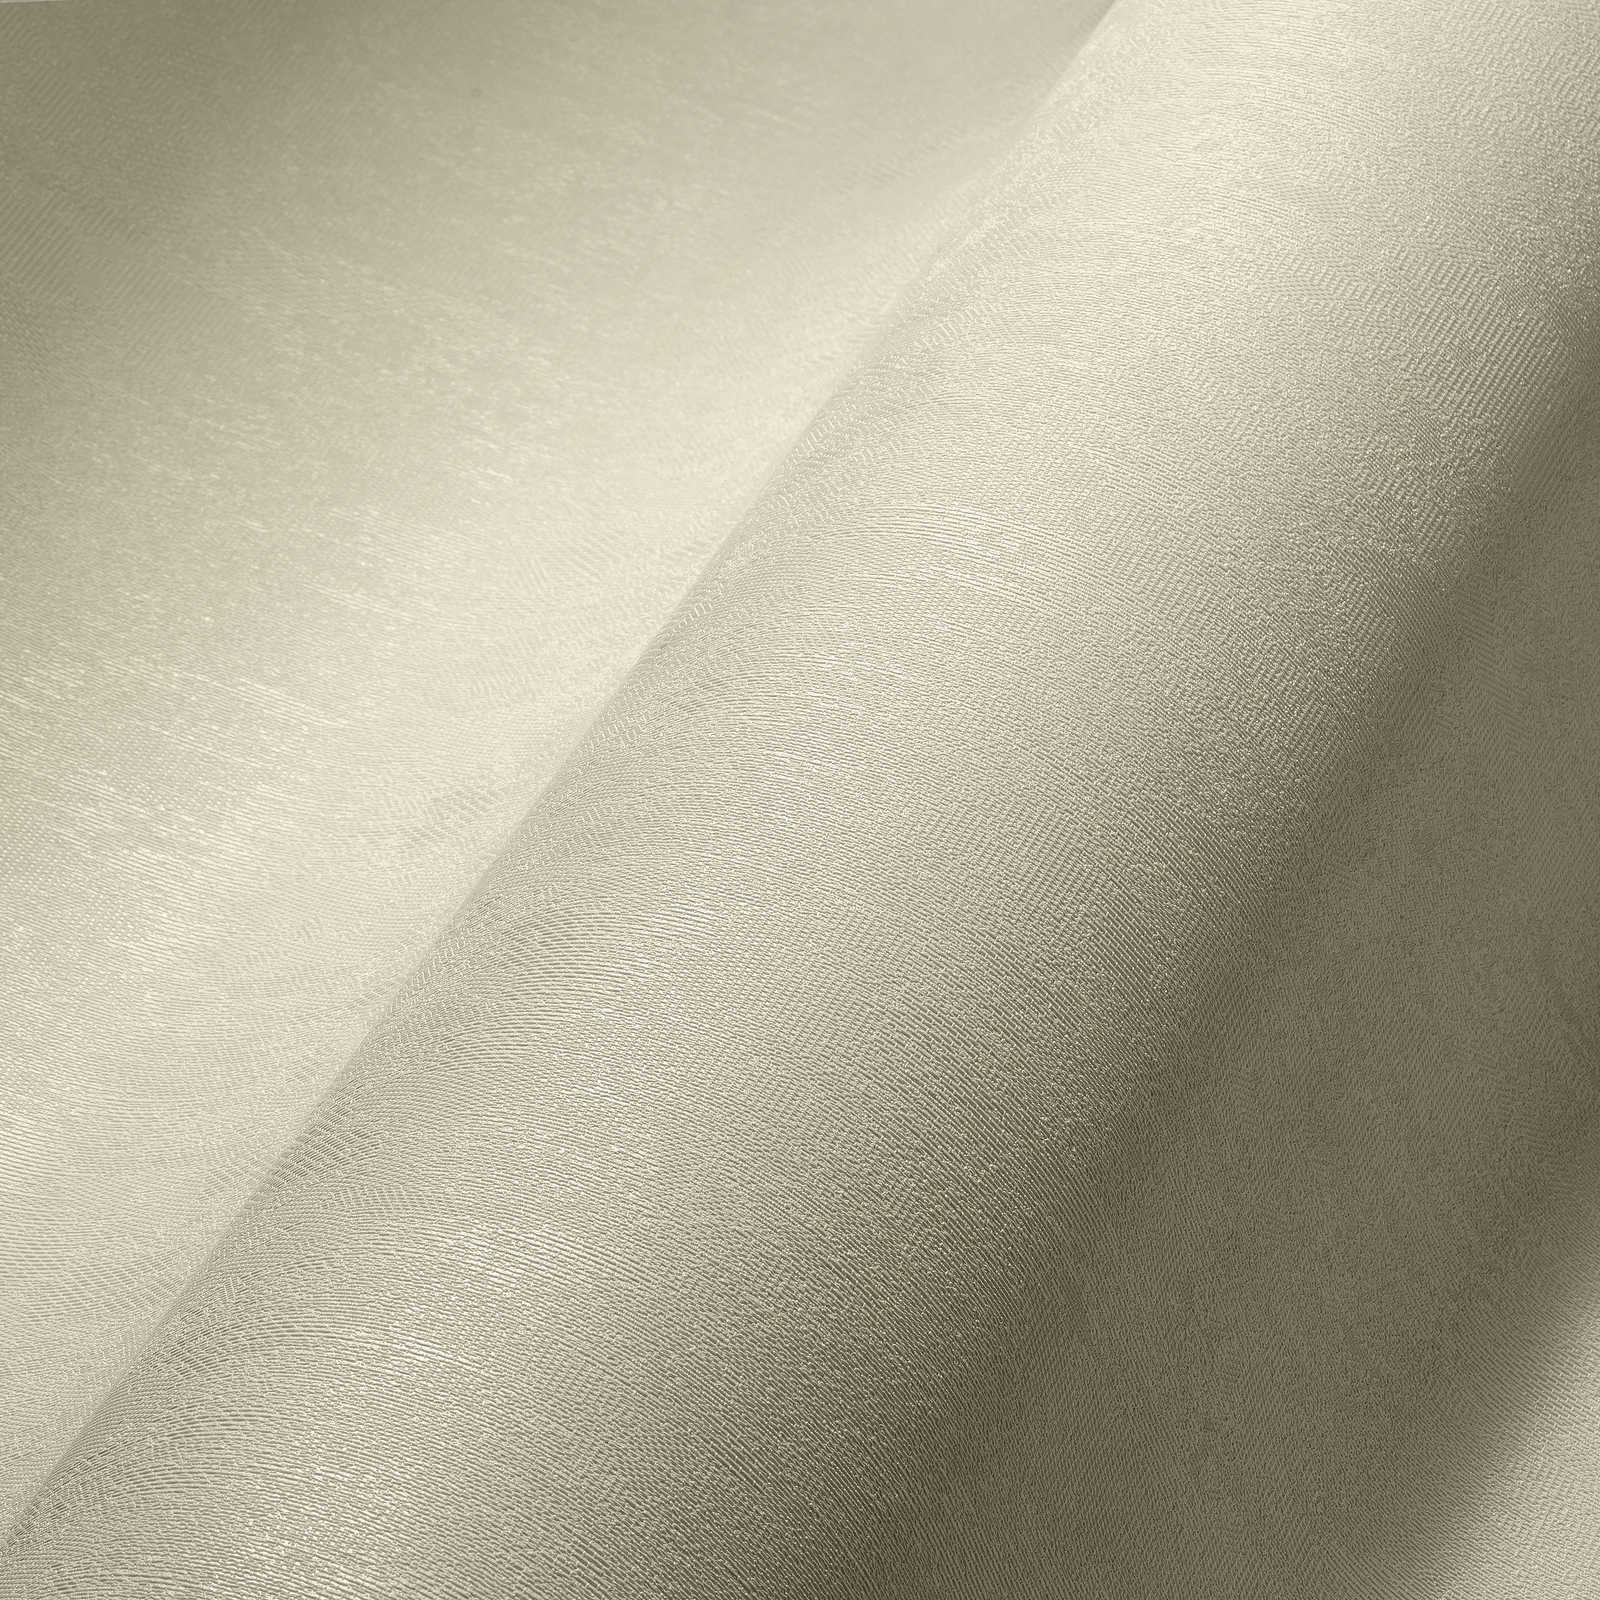             Papel pintado no tejido blanco crema liso con superficie texturizada
        